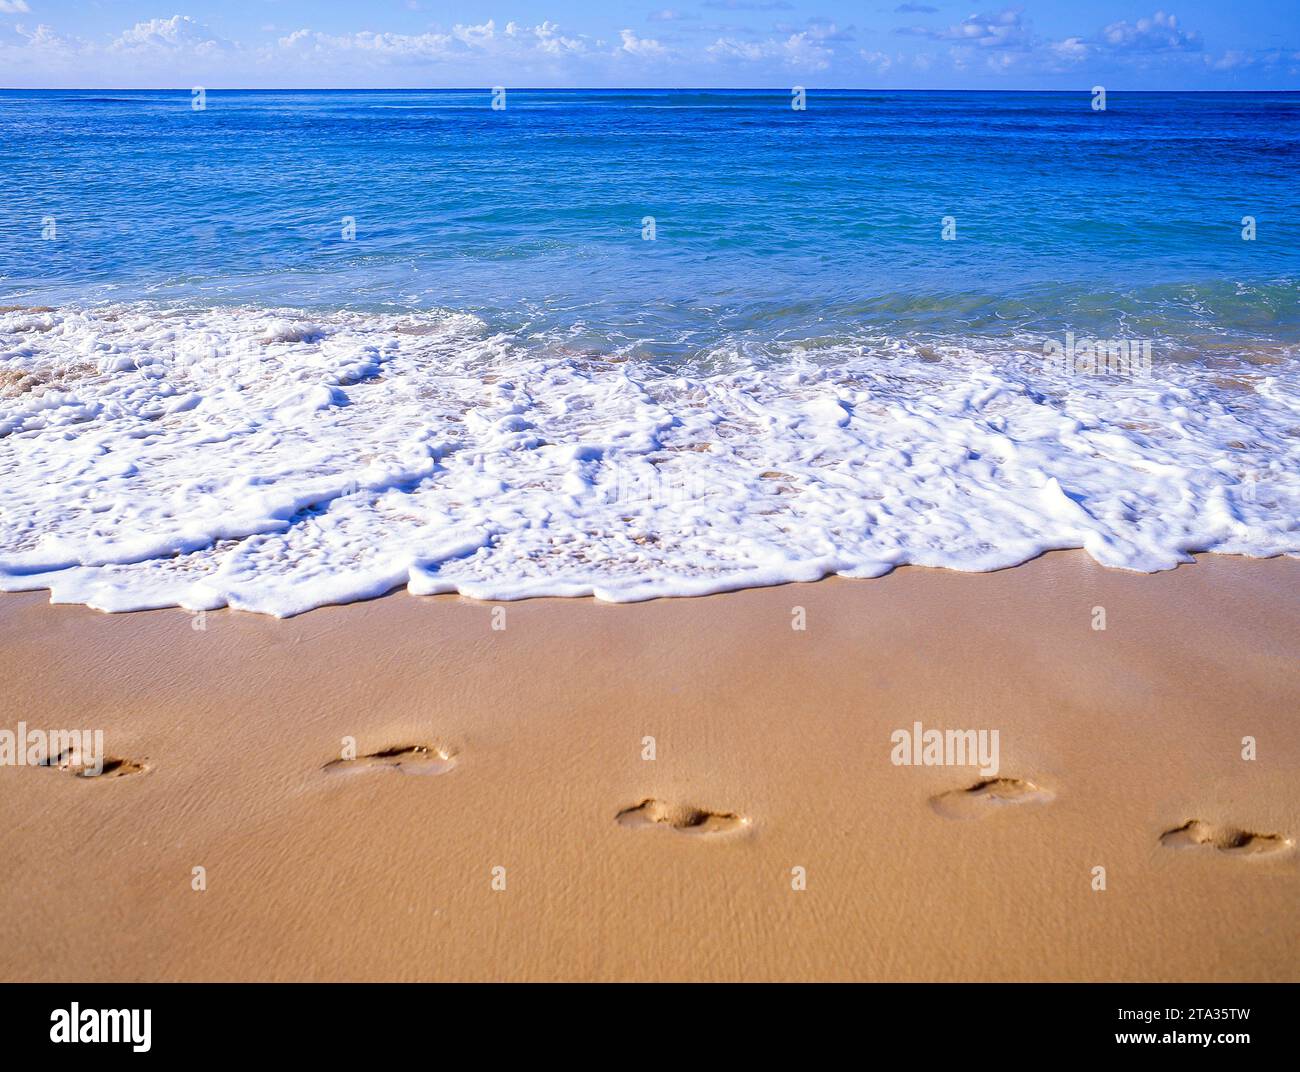 Pas dans le sable, Eagle Beach, Oranjestad District, Aruba, ABC Islands, Antilles sous le vent, Caraïbes Banque D'Images